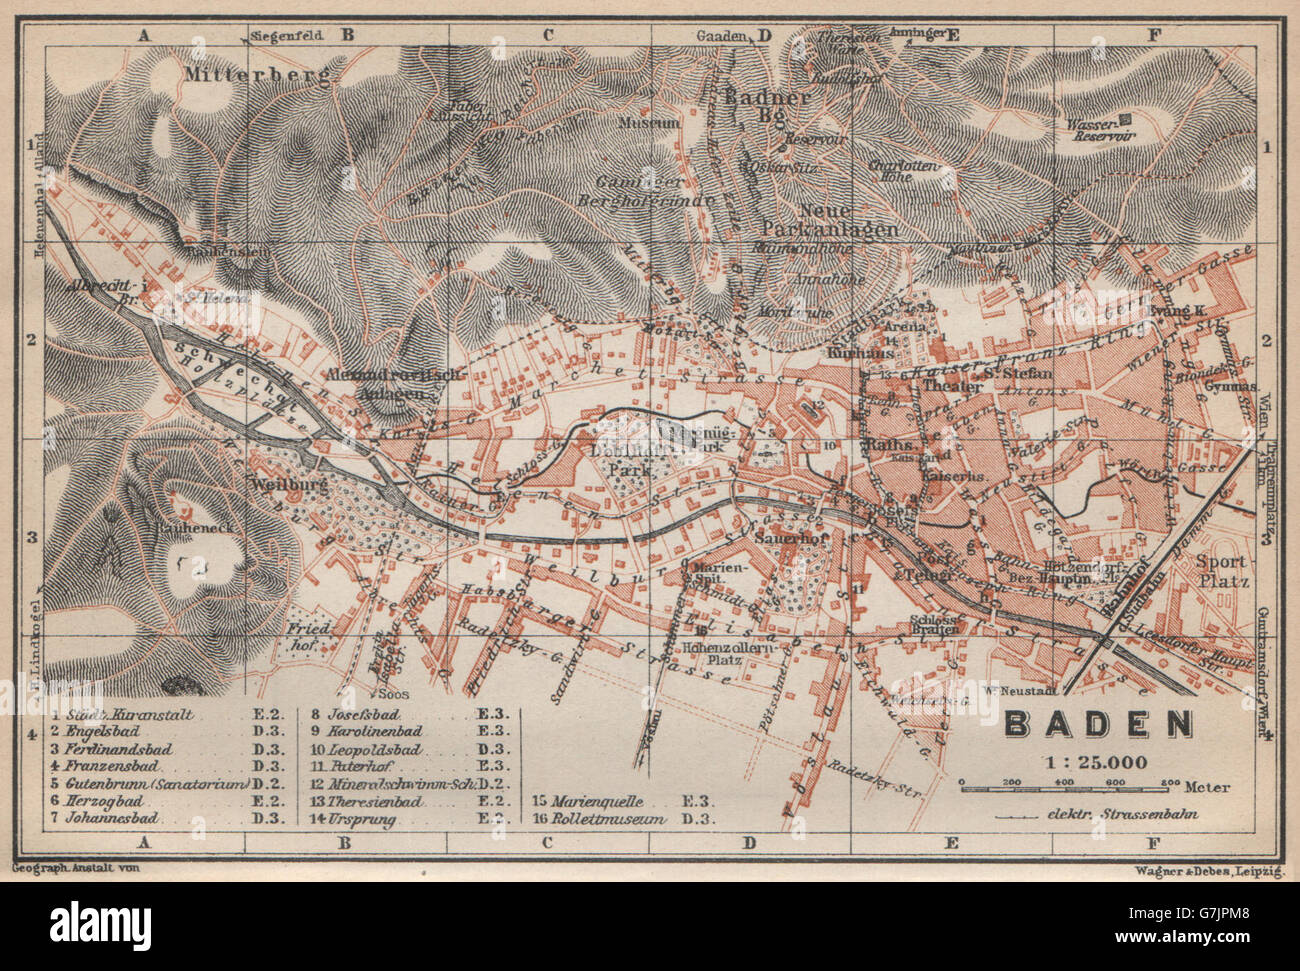 BADEN bei Wien Viena /nr stadtplan plan de la ciudad. Österreich, Austria 1929 mapa Foto de stock